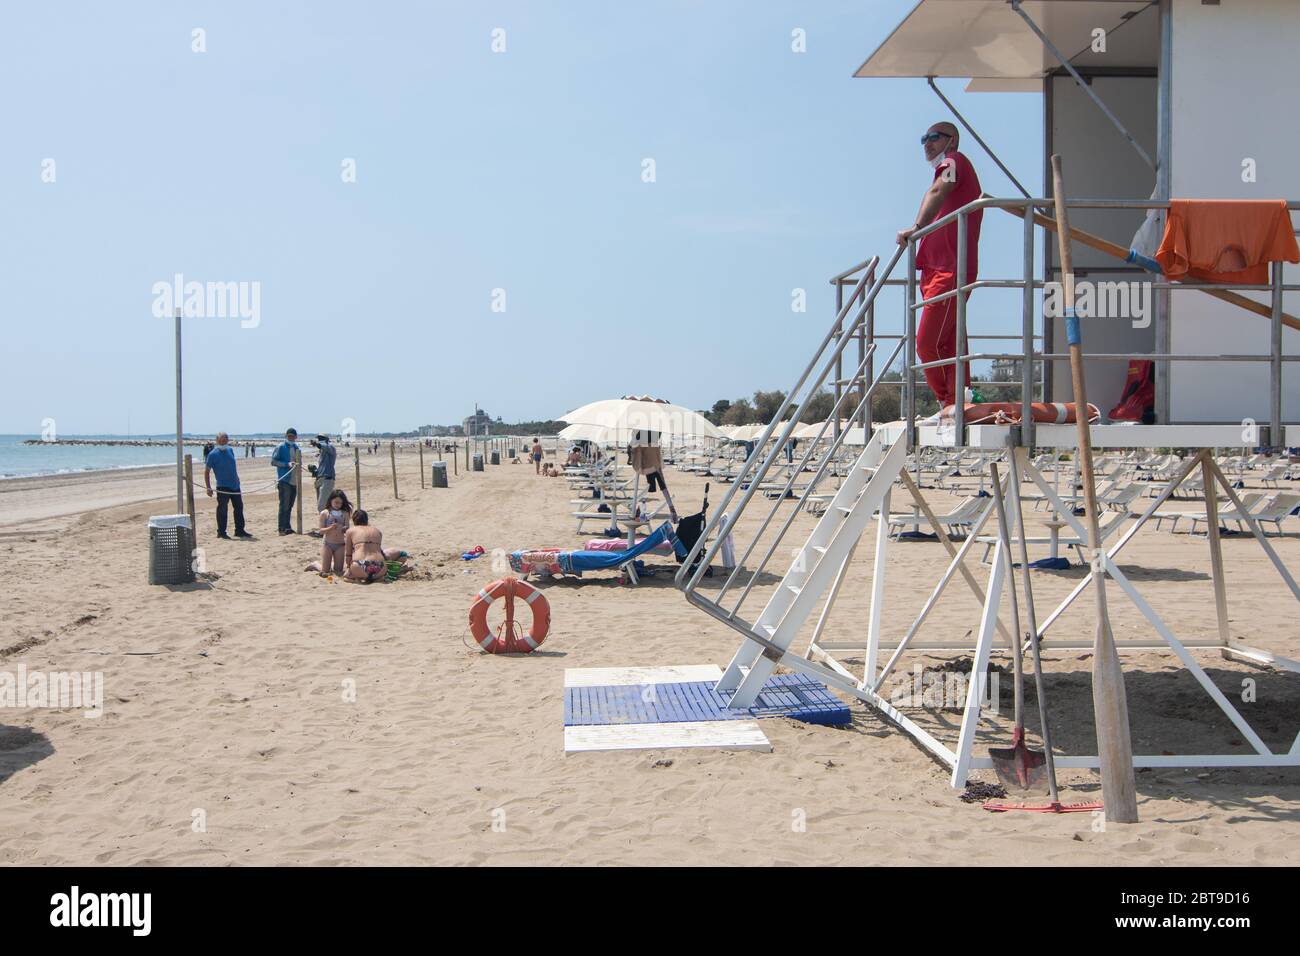 VENEZIA, ITALIA - MAGGIO: Le spiagge riaprono a Lido il 23 maggio 2020 a Venezia. Le spiagge della regione veneta si sono riaperte, subordinatamente Foto Stock